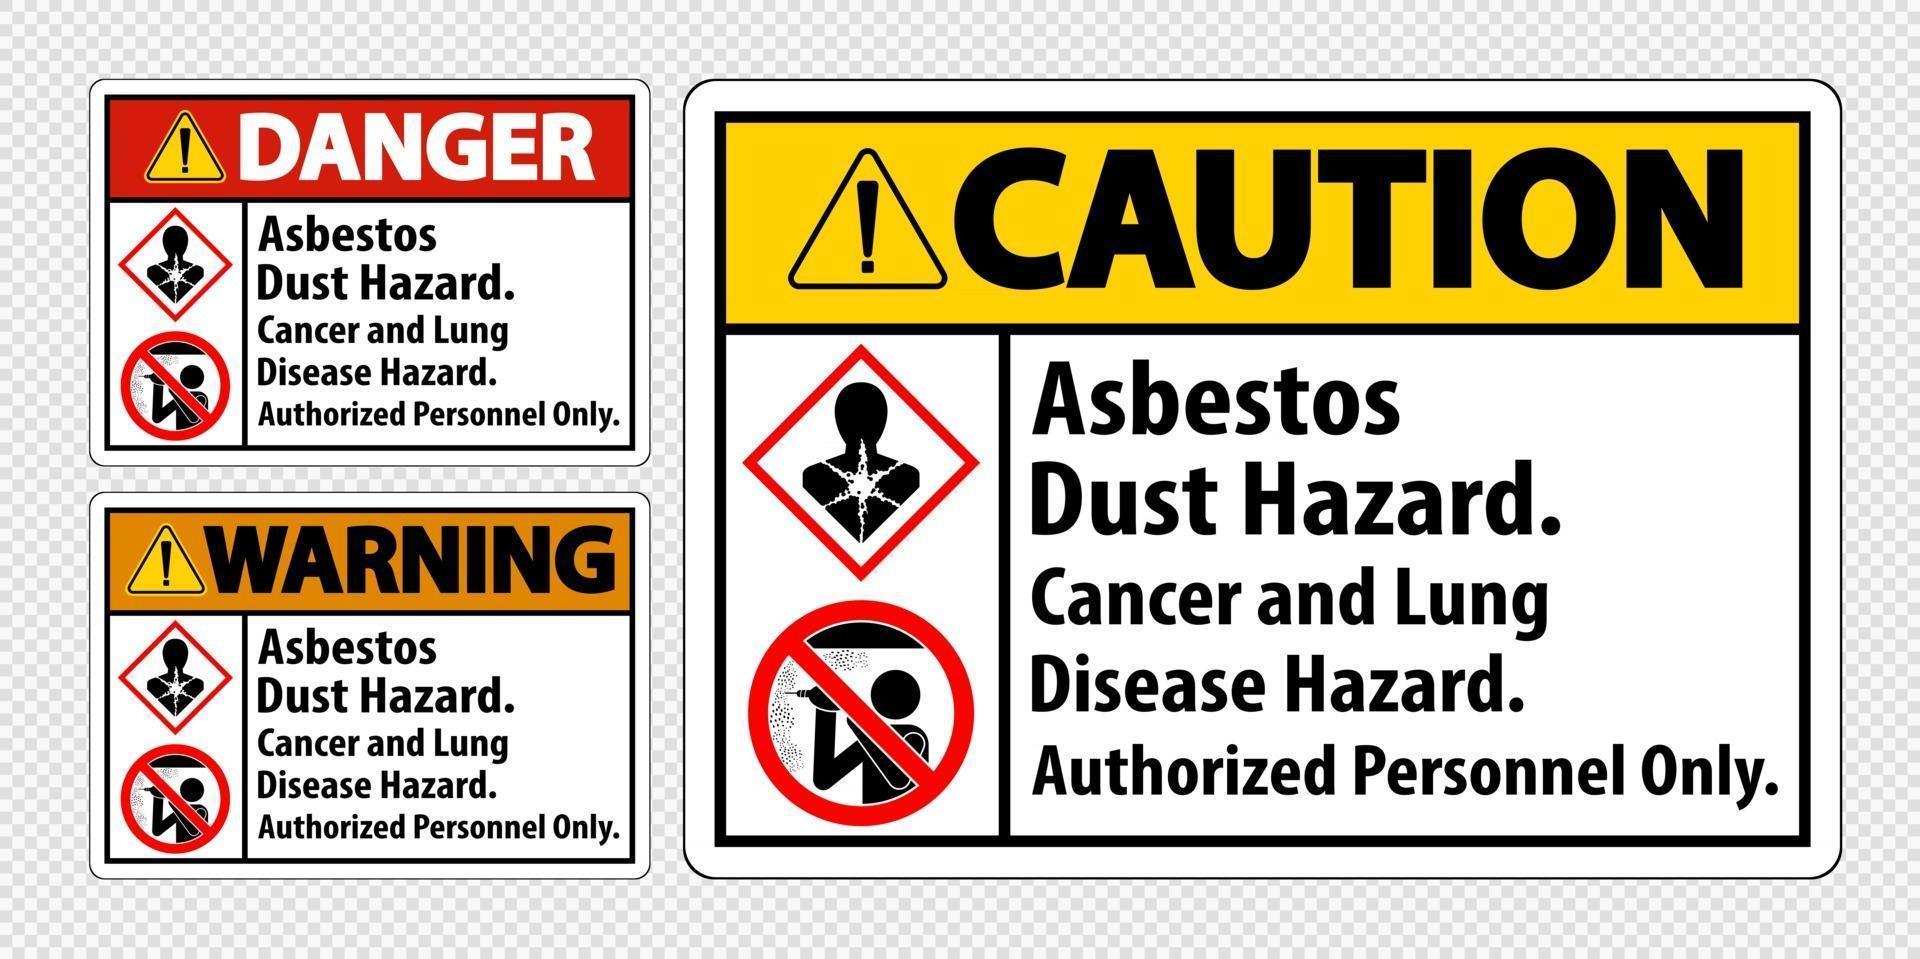 étiquette de sécurité, risque de poussière d'amiante, risque de cancer et de maladie pulmonaire personnel autorisé uniquement vecteur